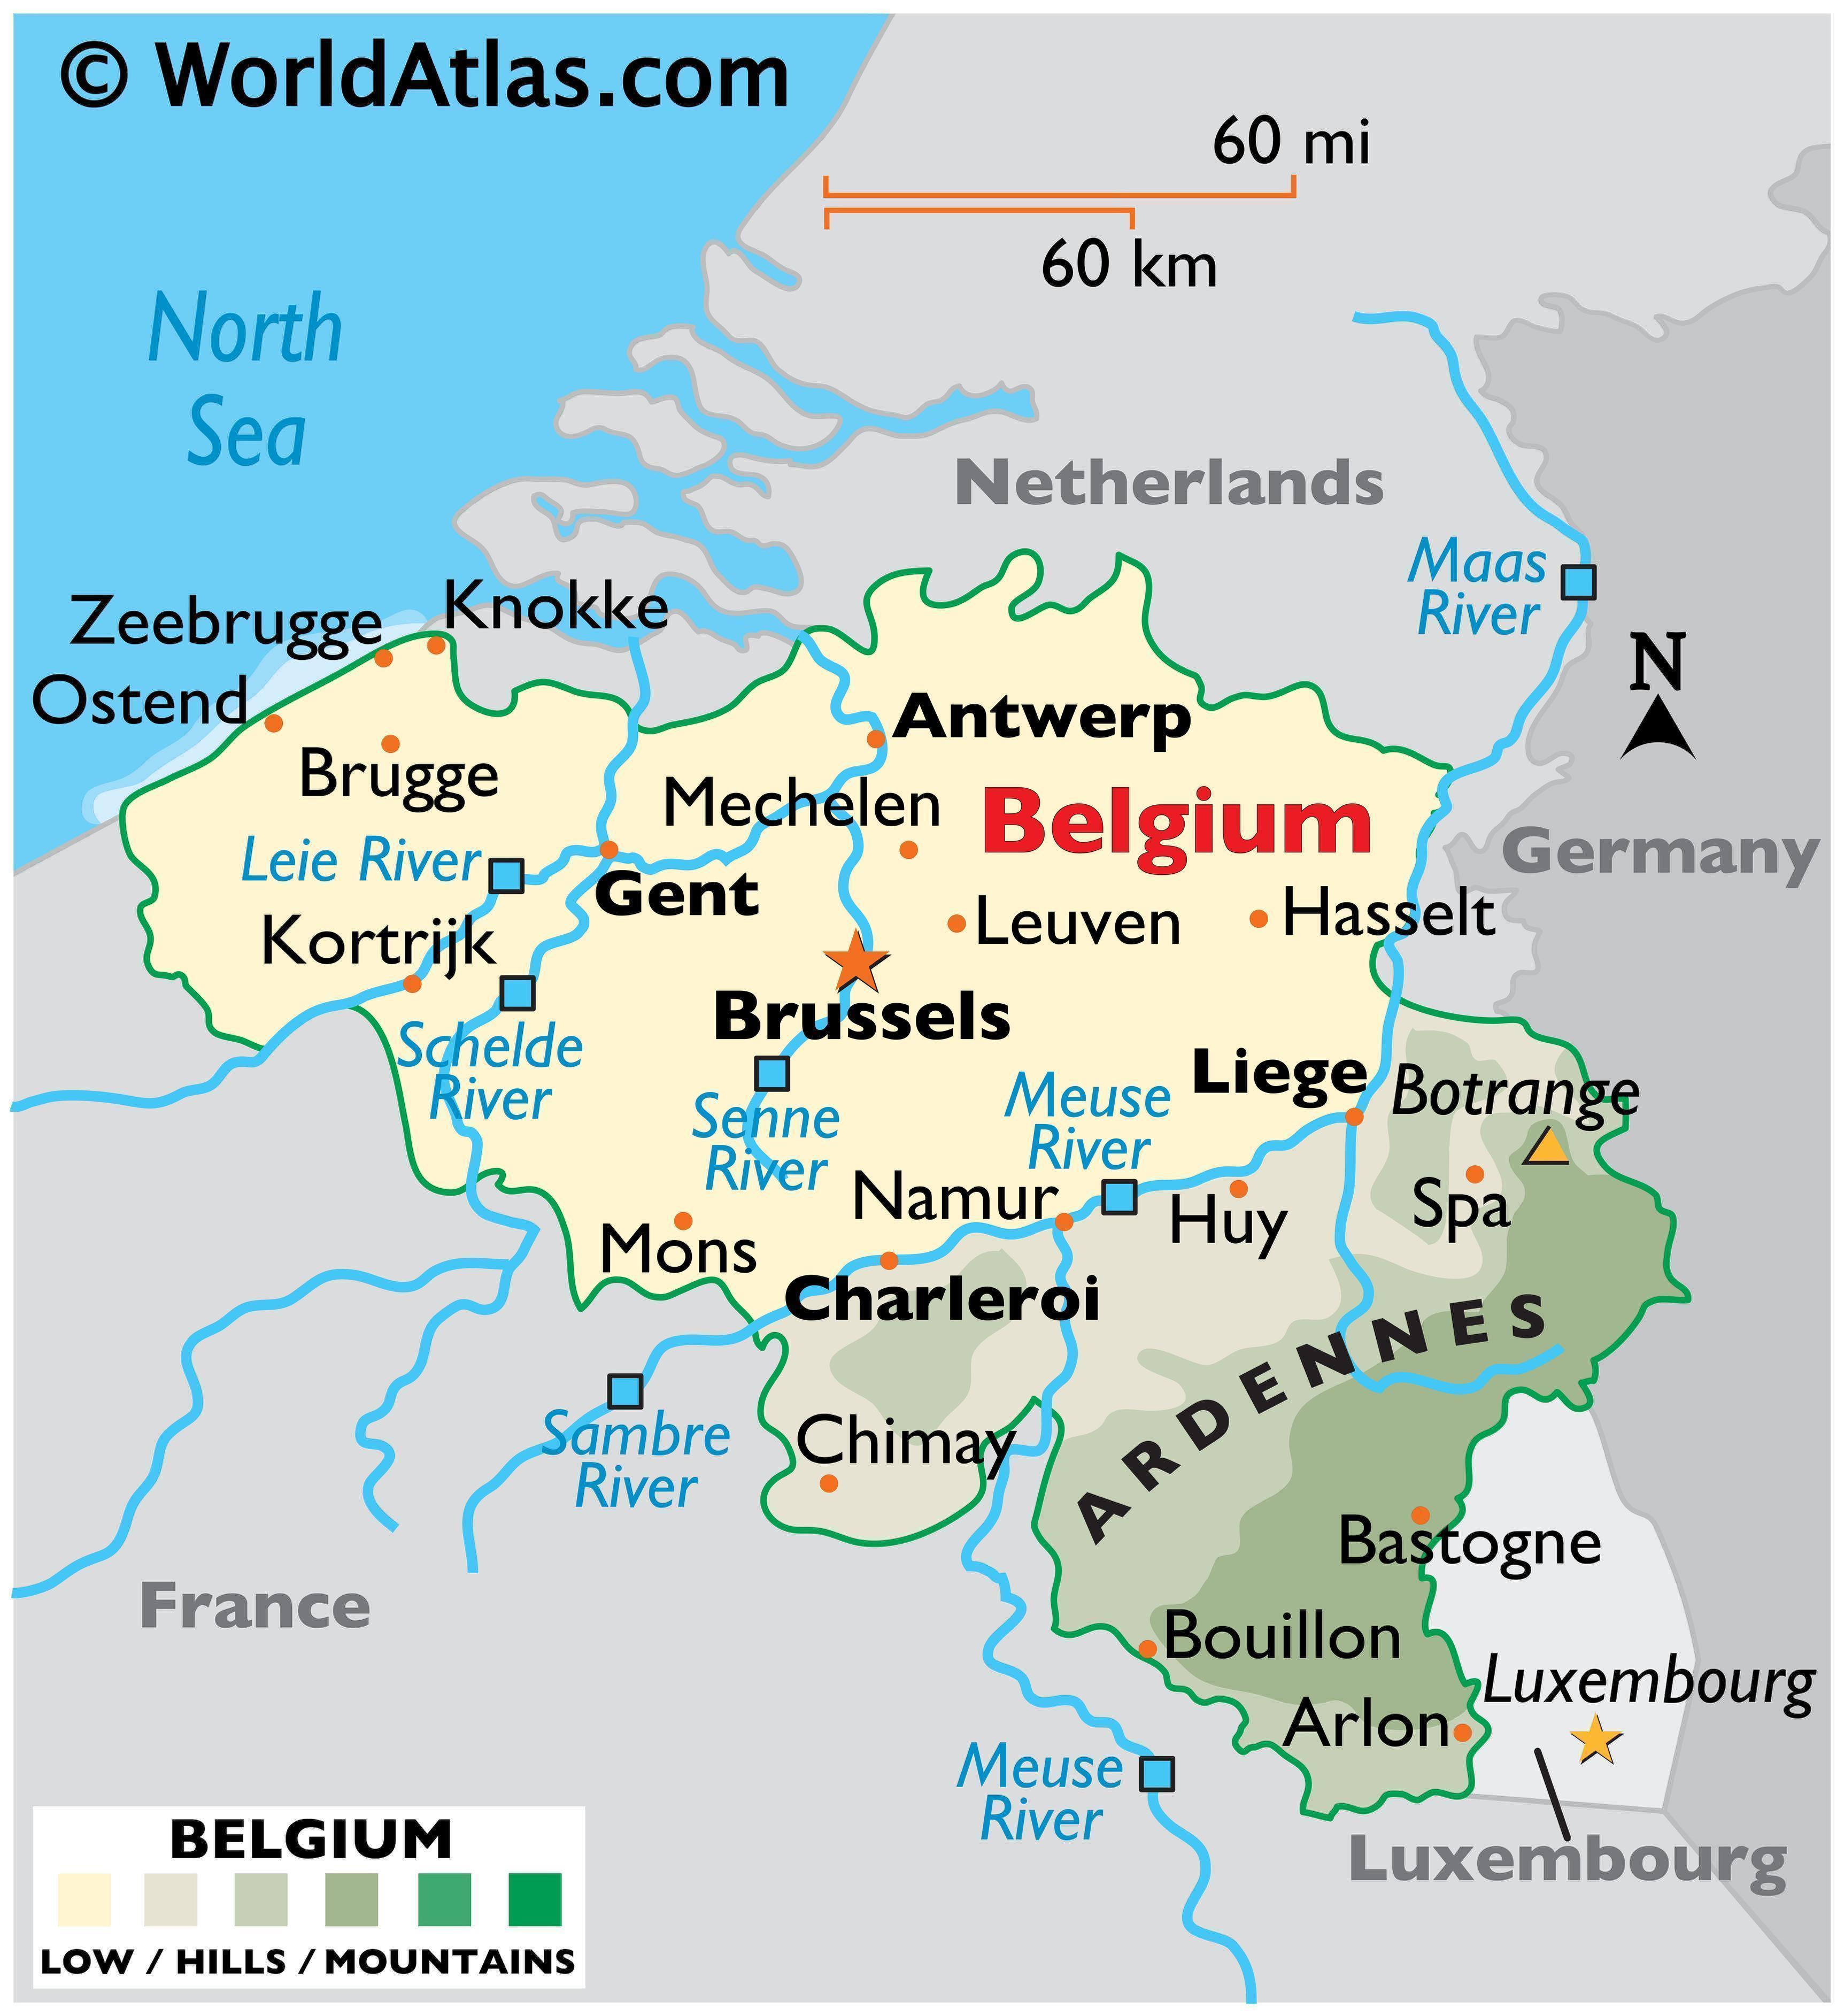 Where is Belgium located?